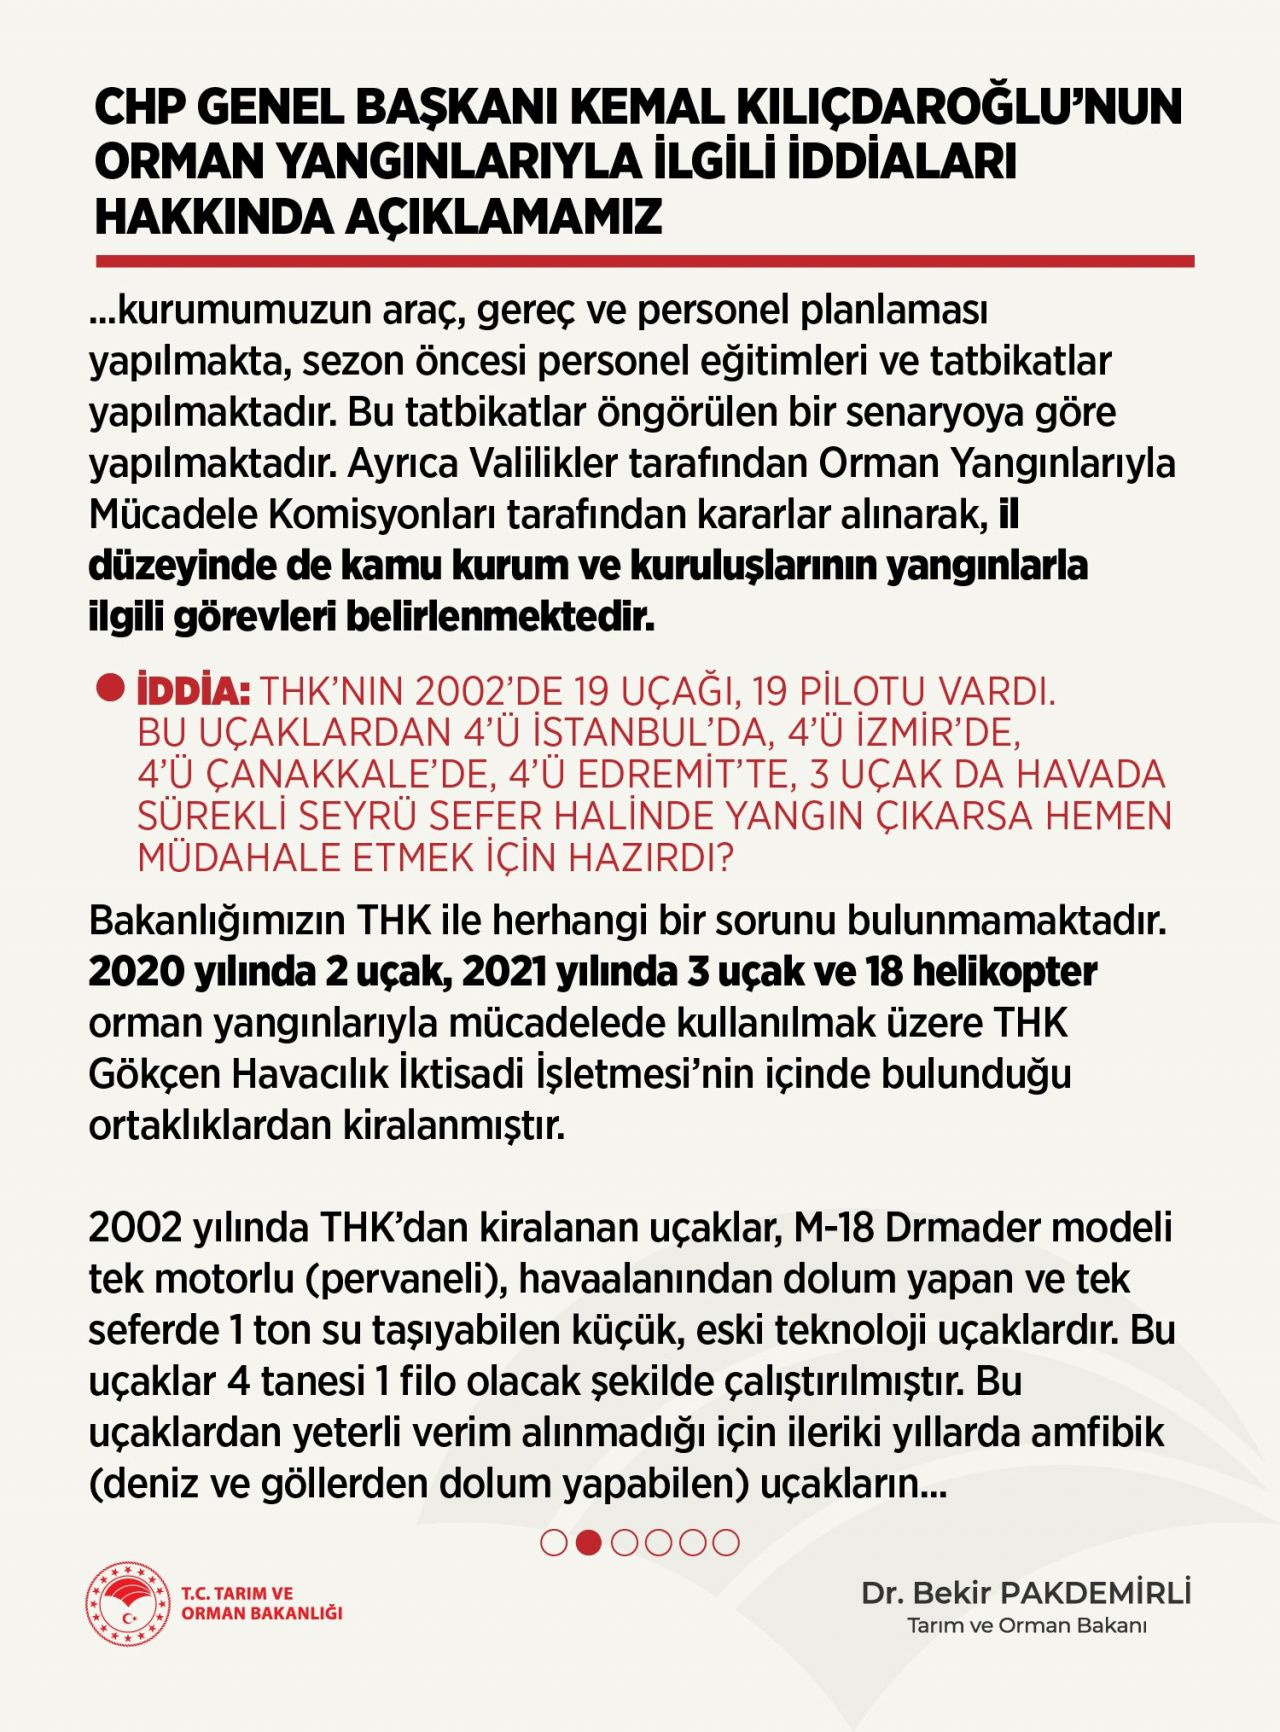 Tarım ve Orman Bakanlığından Kılıçdaroğlu'nun iddialarına cevap